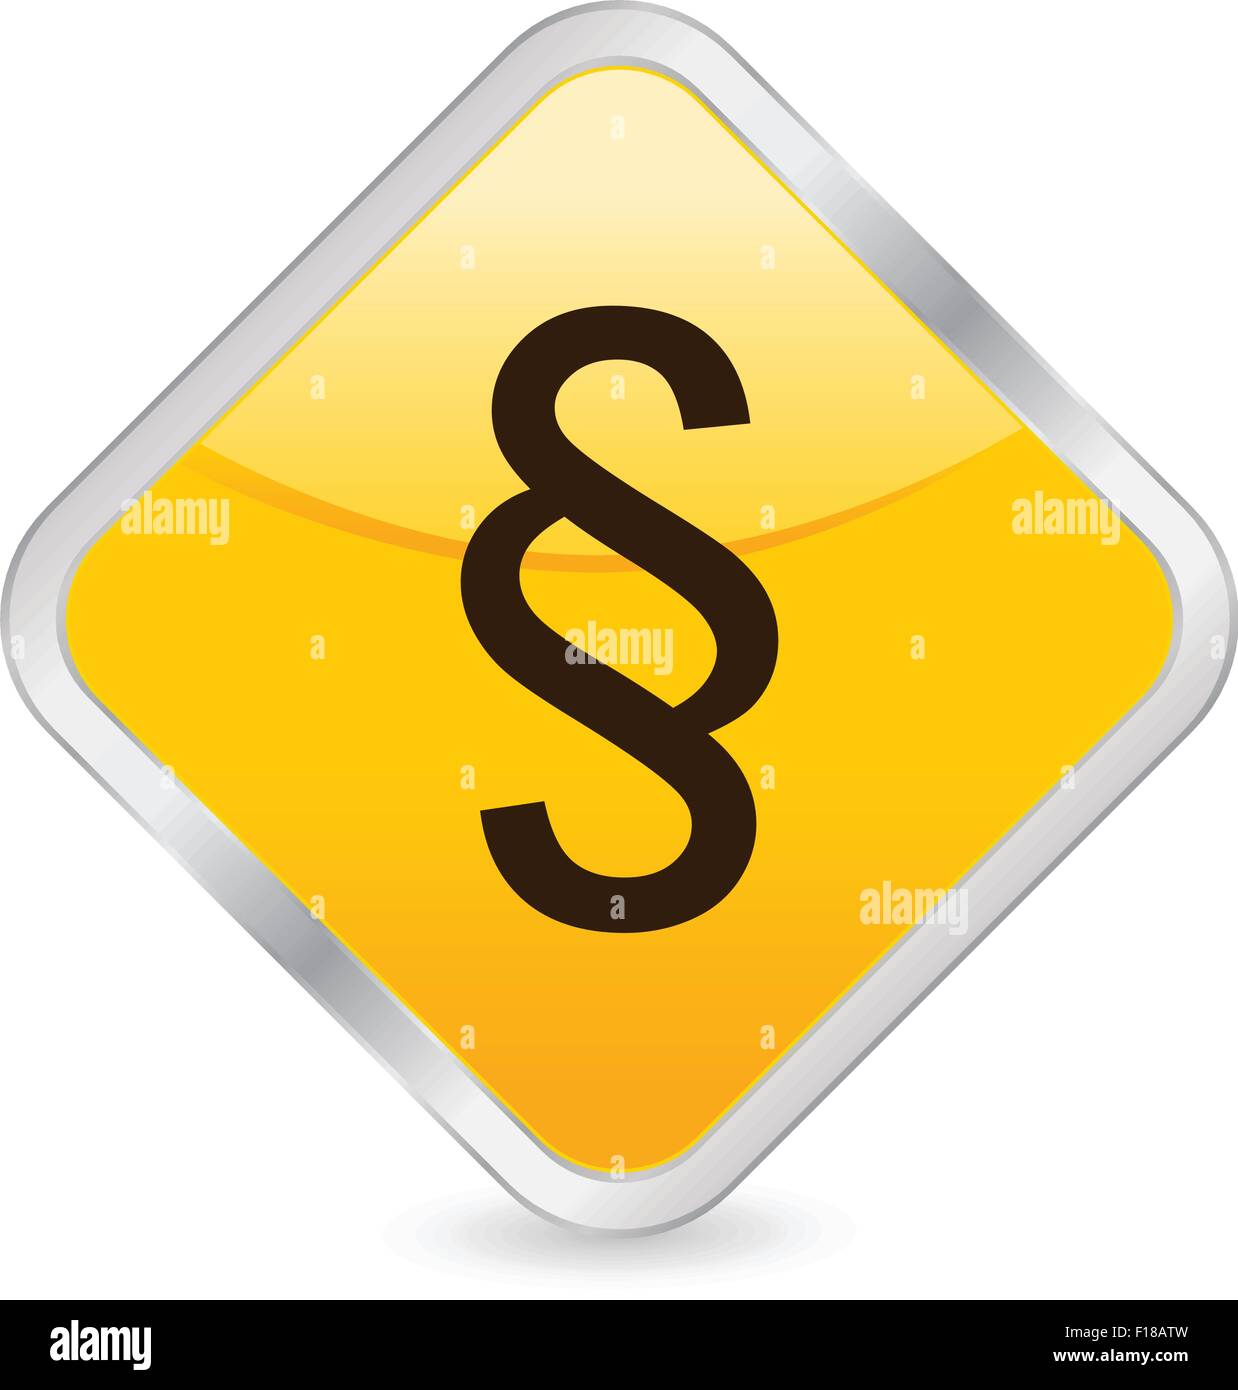 Gelbes Quadrat Symbol isoliert auf einem weißen Hintergrund. Vektor-Illustration. Stock Vektor